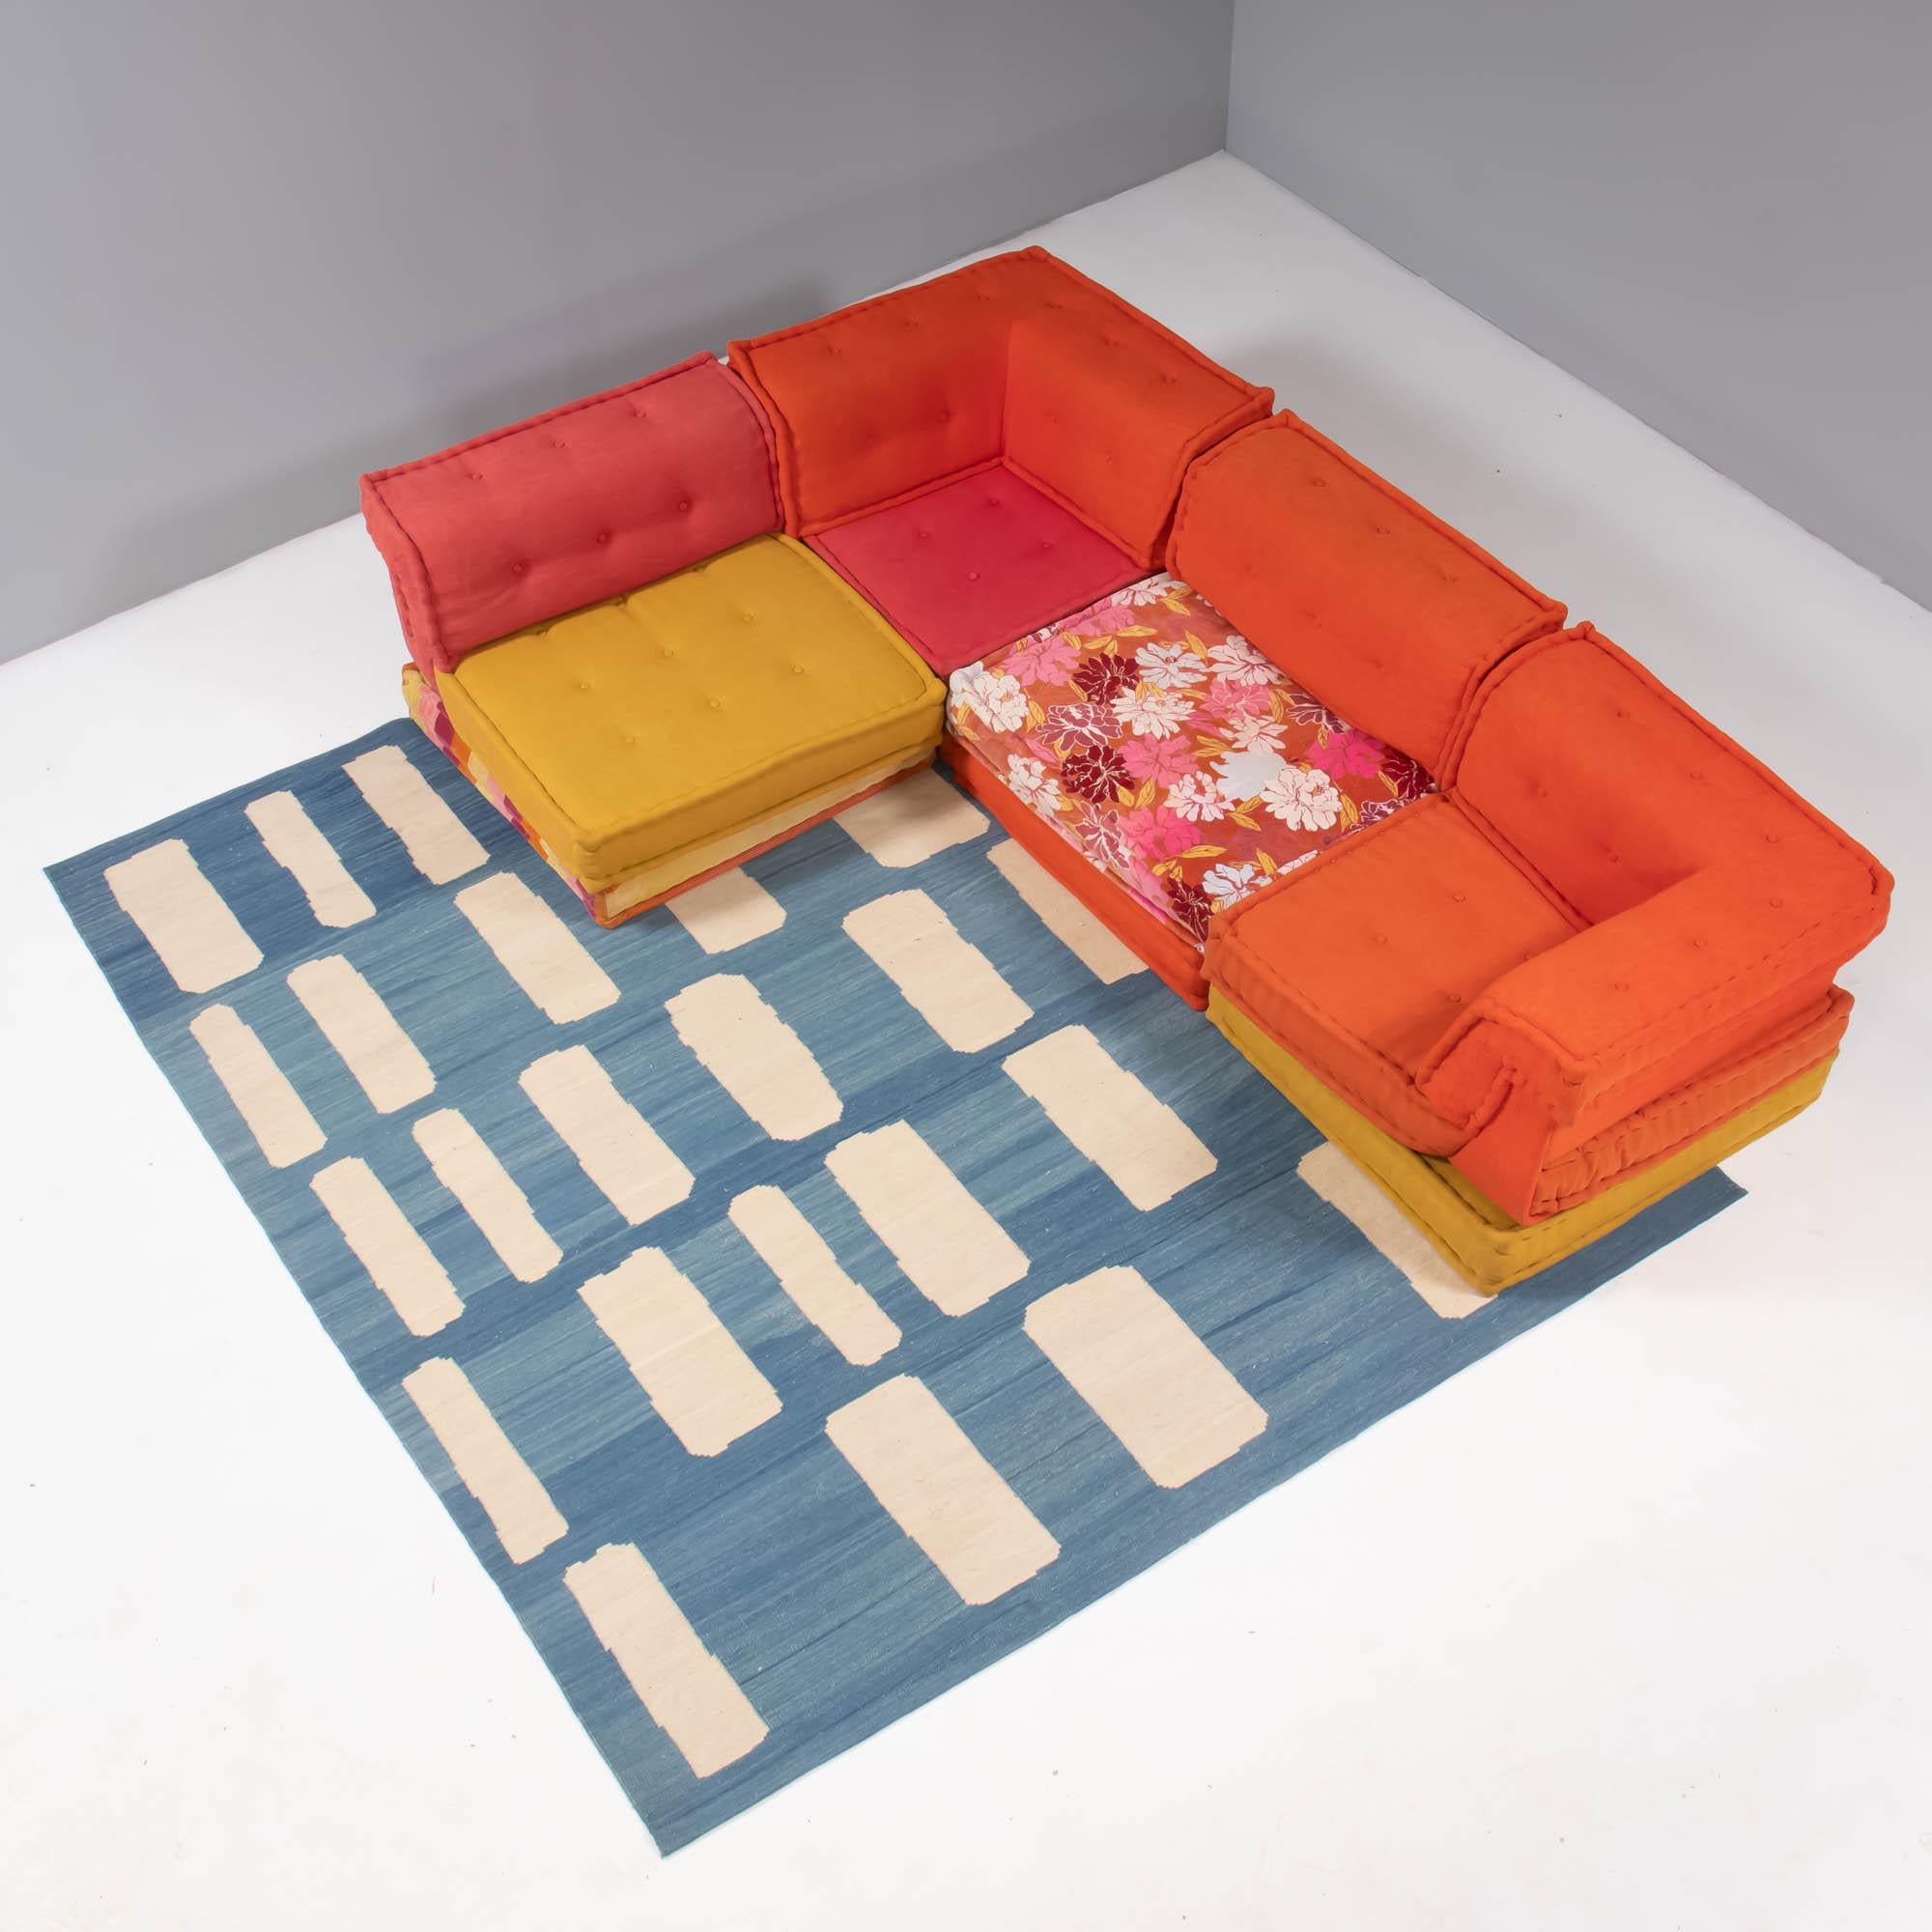 Das 1971 von Hans Hopfer für Roche Bobois entworfene Mah-Jong-Sofa ist zu einem Designklassiker geworden.

Alle zwölf Stücke werden mit einer Polsterung Ihrer Wahl versehen. Je nach Ihren Anforderungen können wir auch Teile hinzufügen oder